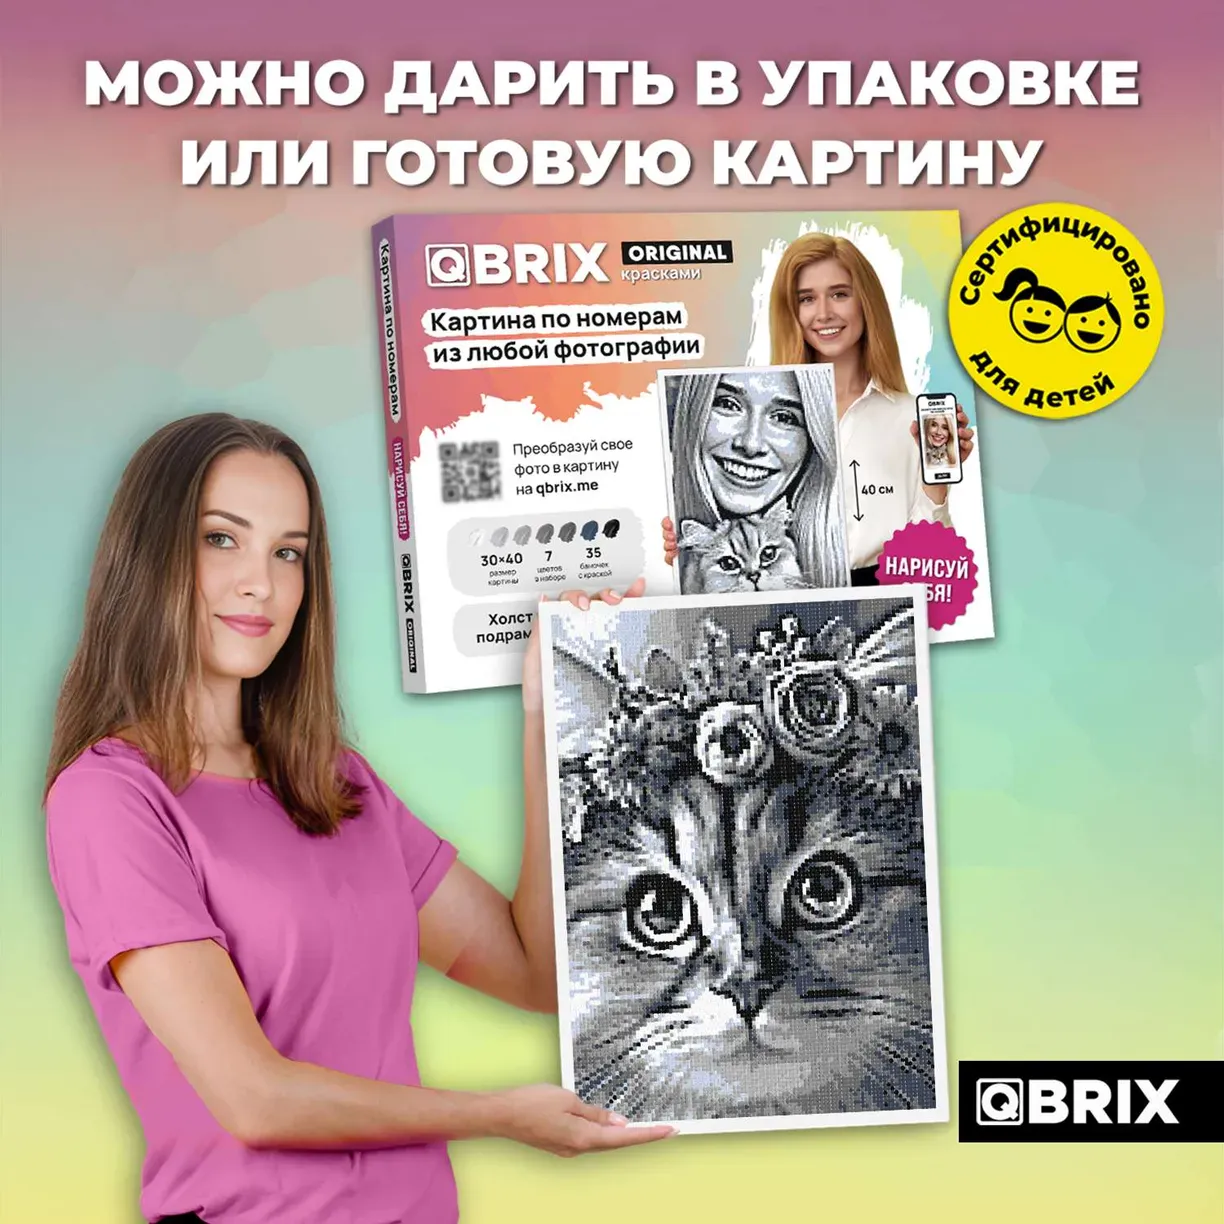 Картина по номерам из любой фотографии Qbrix Original 30×40